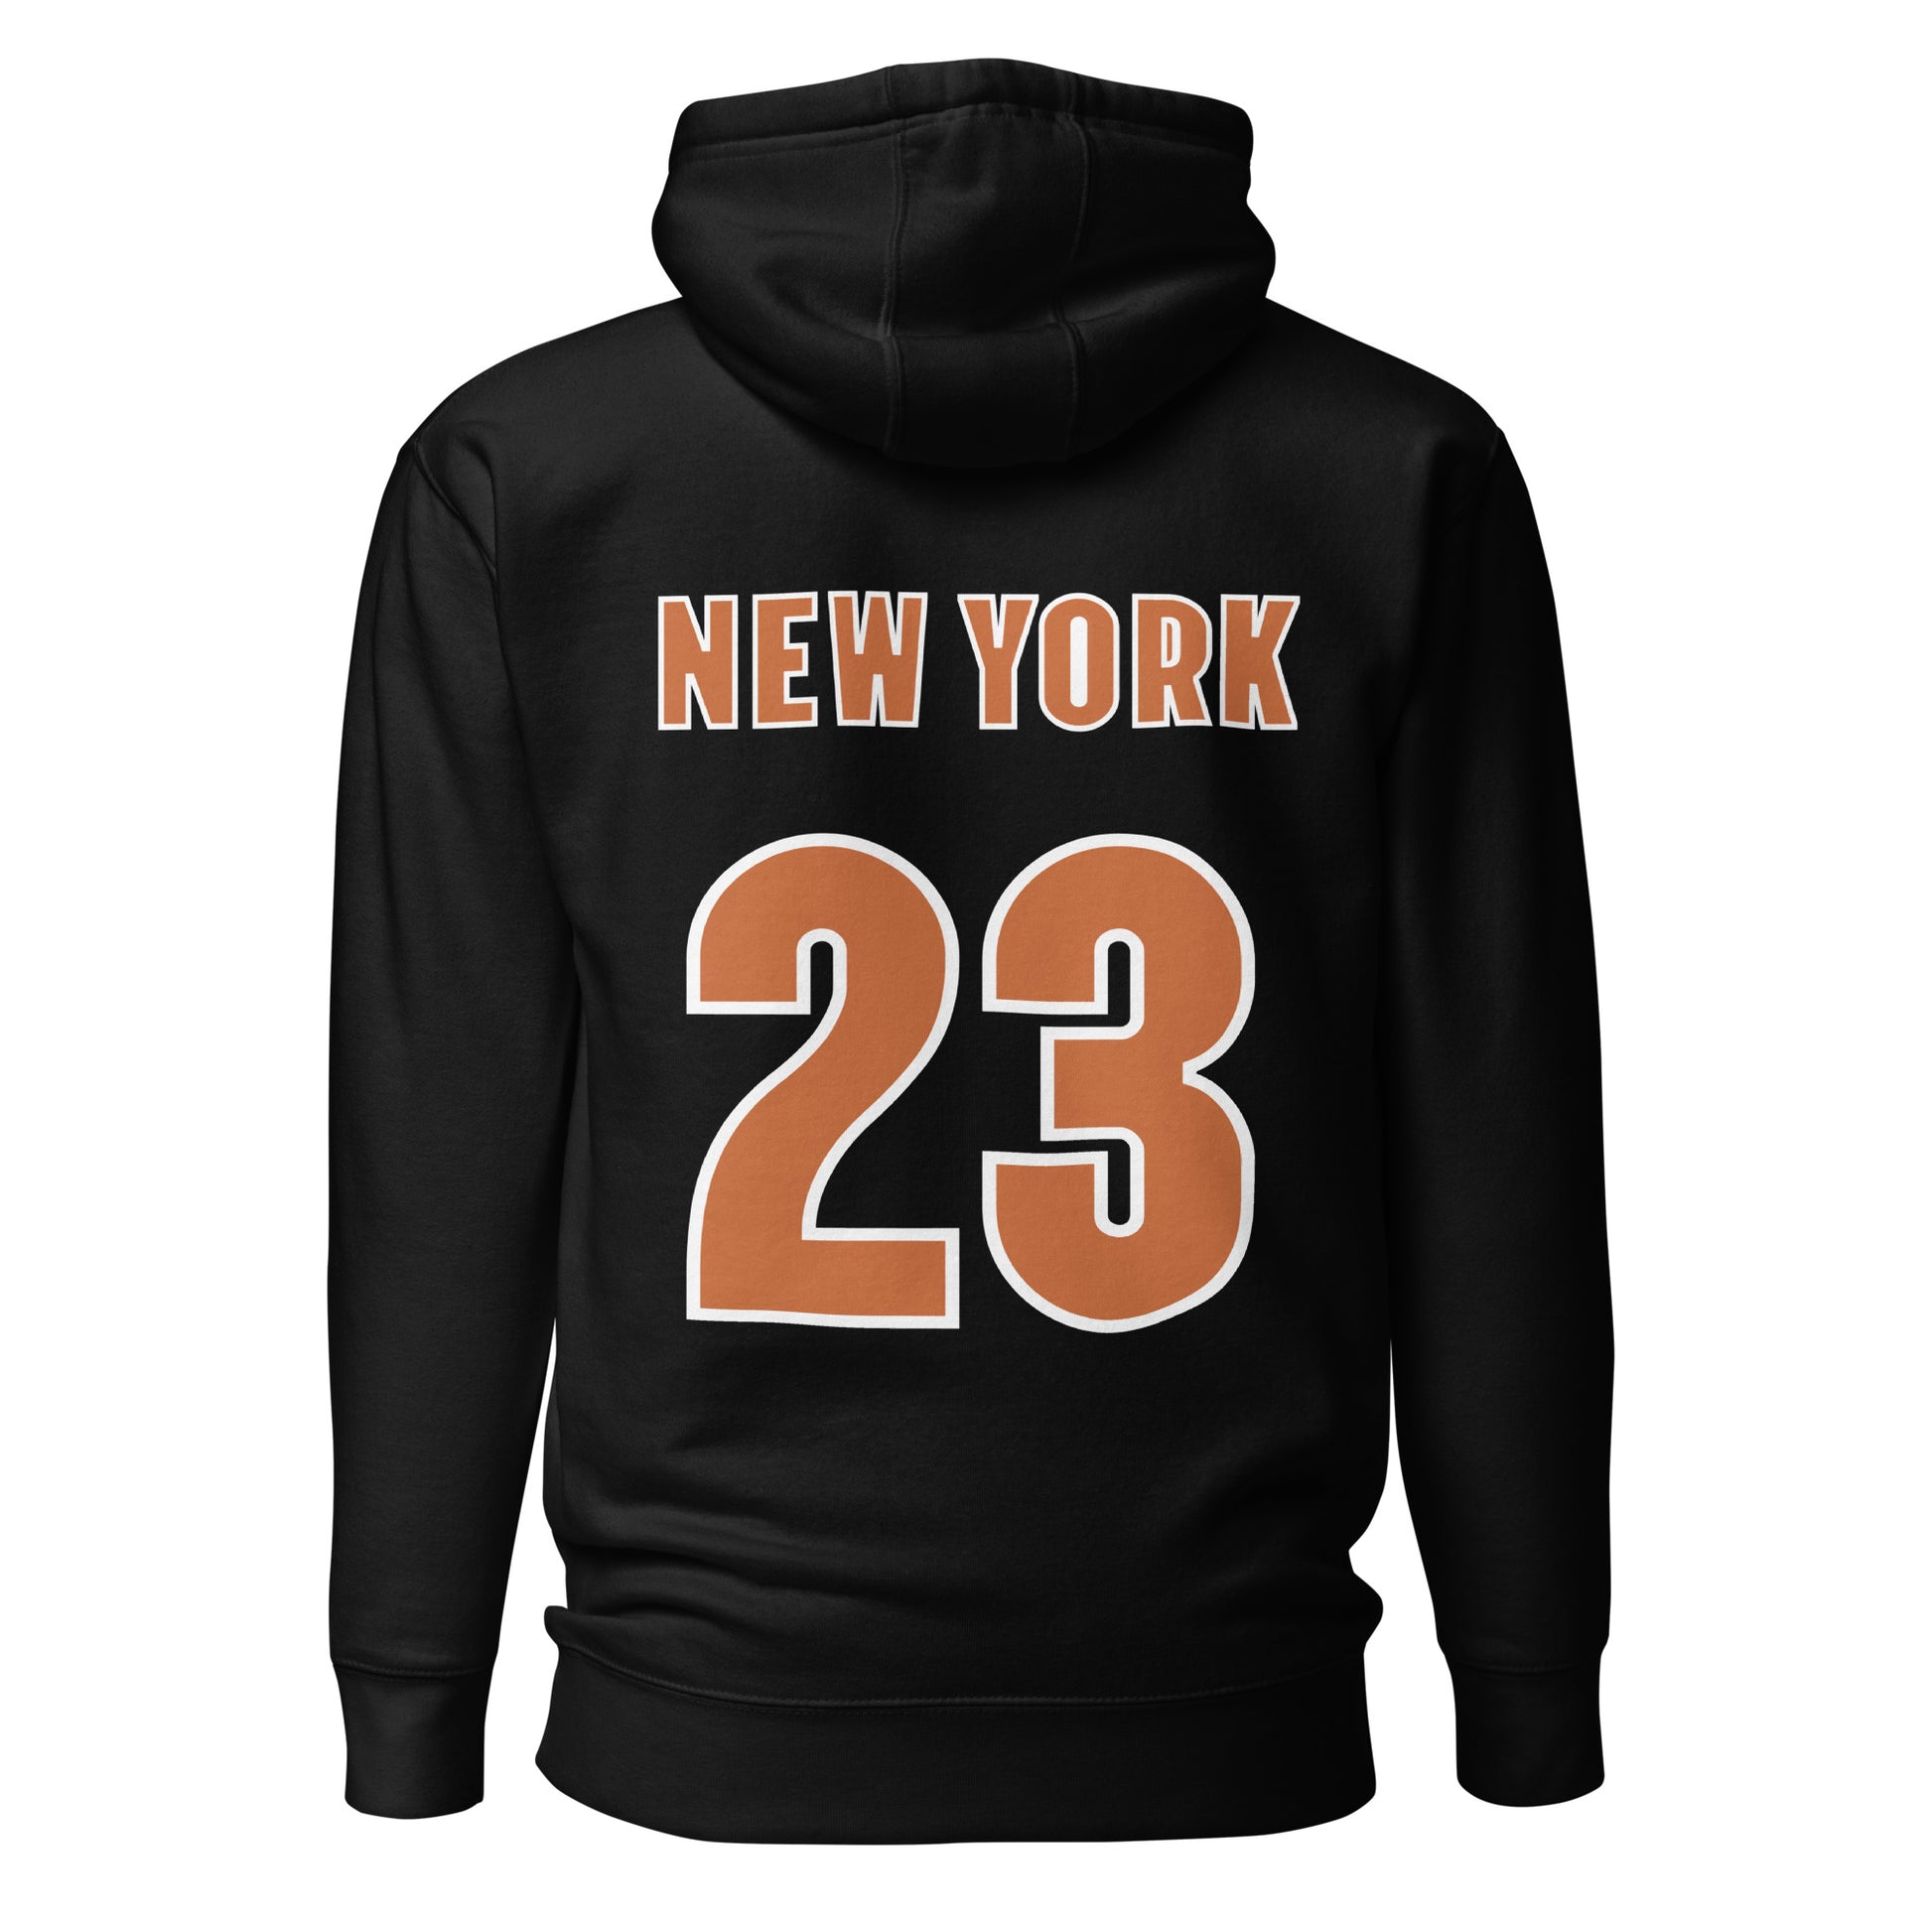 gym - hoodies for men - hoodies - newyork - 23 - workout - unisex hoodies - tshirts - tees - men tshirts